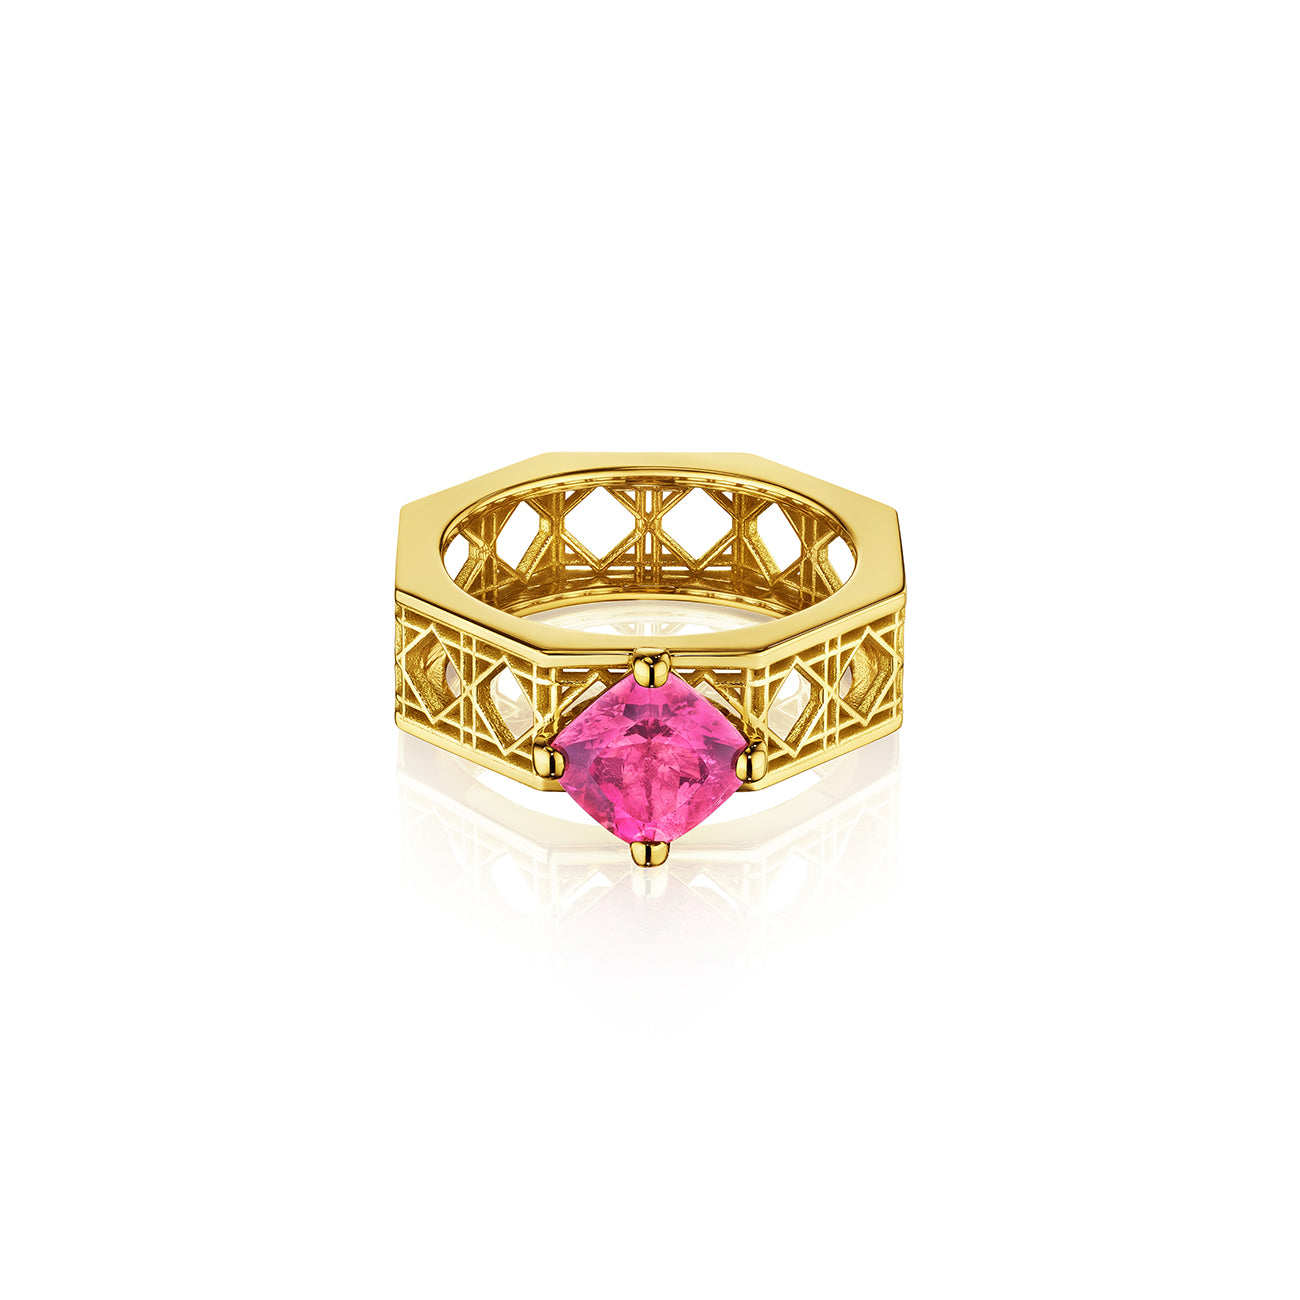 Doudou Chéri Ring, 18K Yellow Gold and Pink Tourmaline